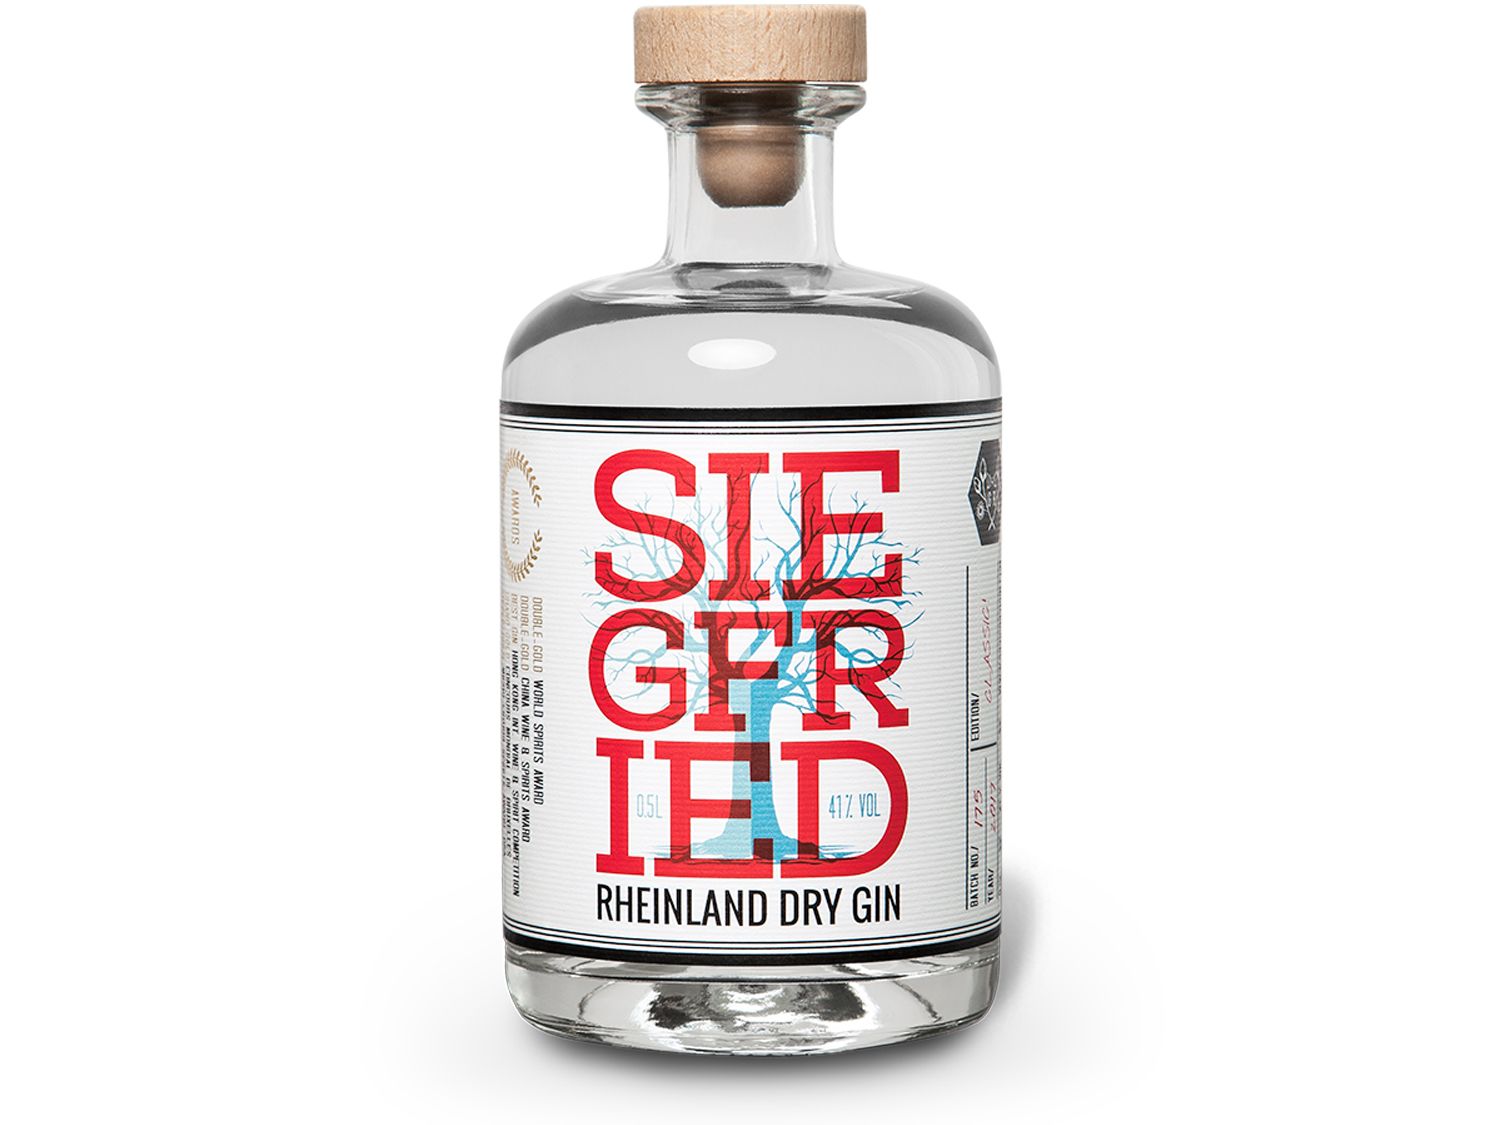 Siegfried Rheinland Dry Gin 41 % Vol